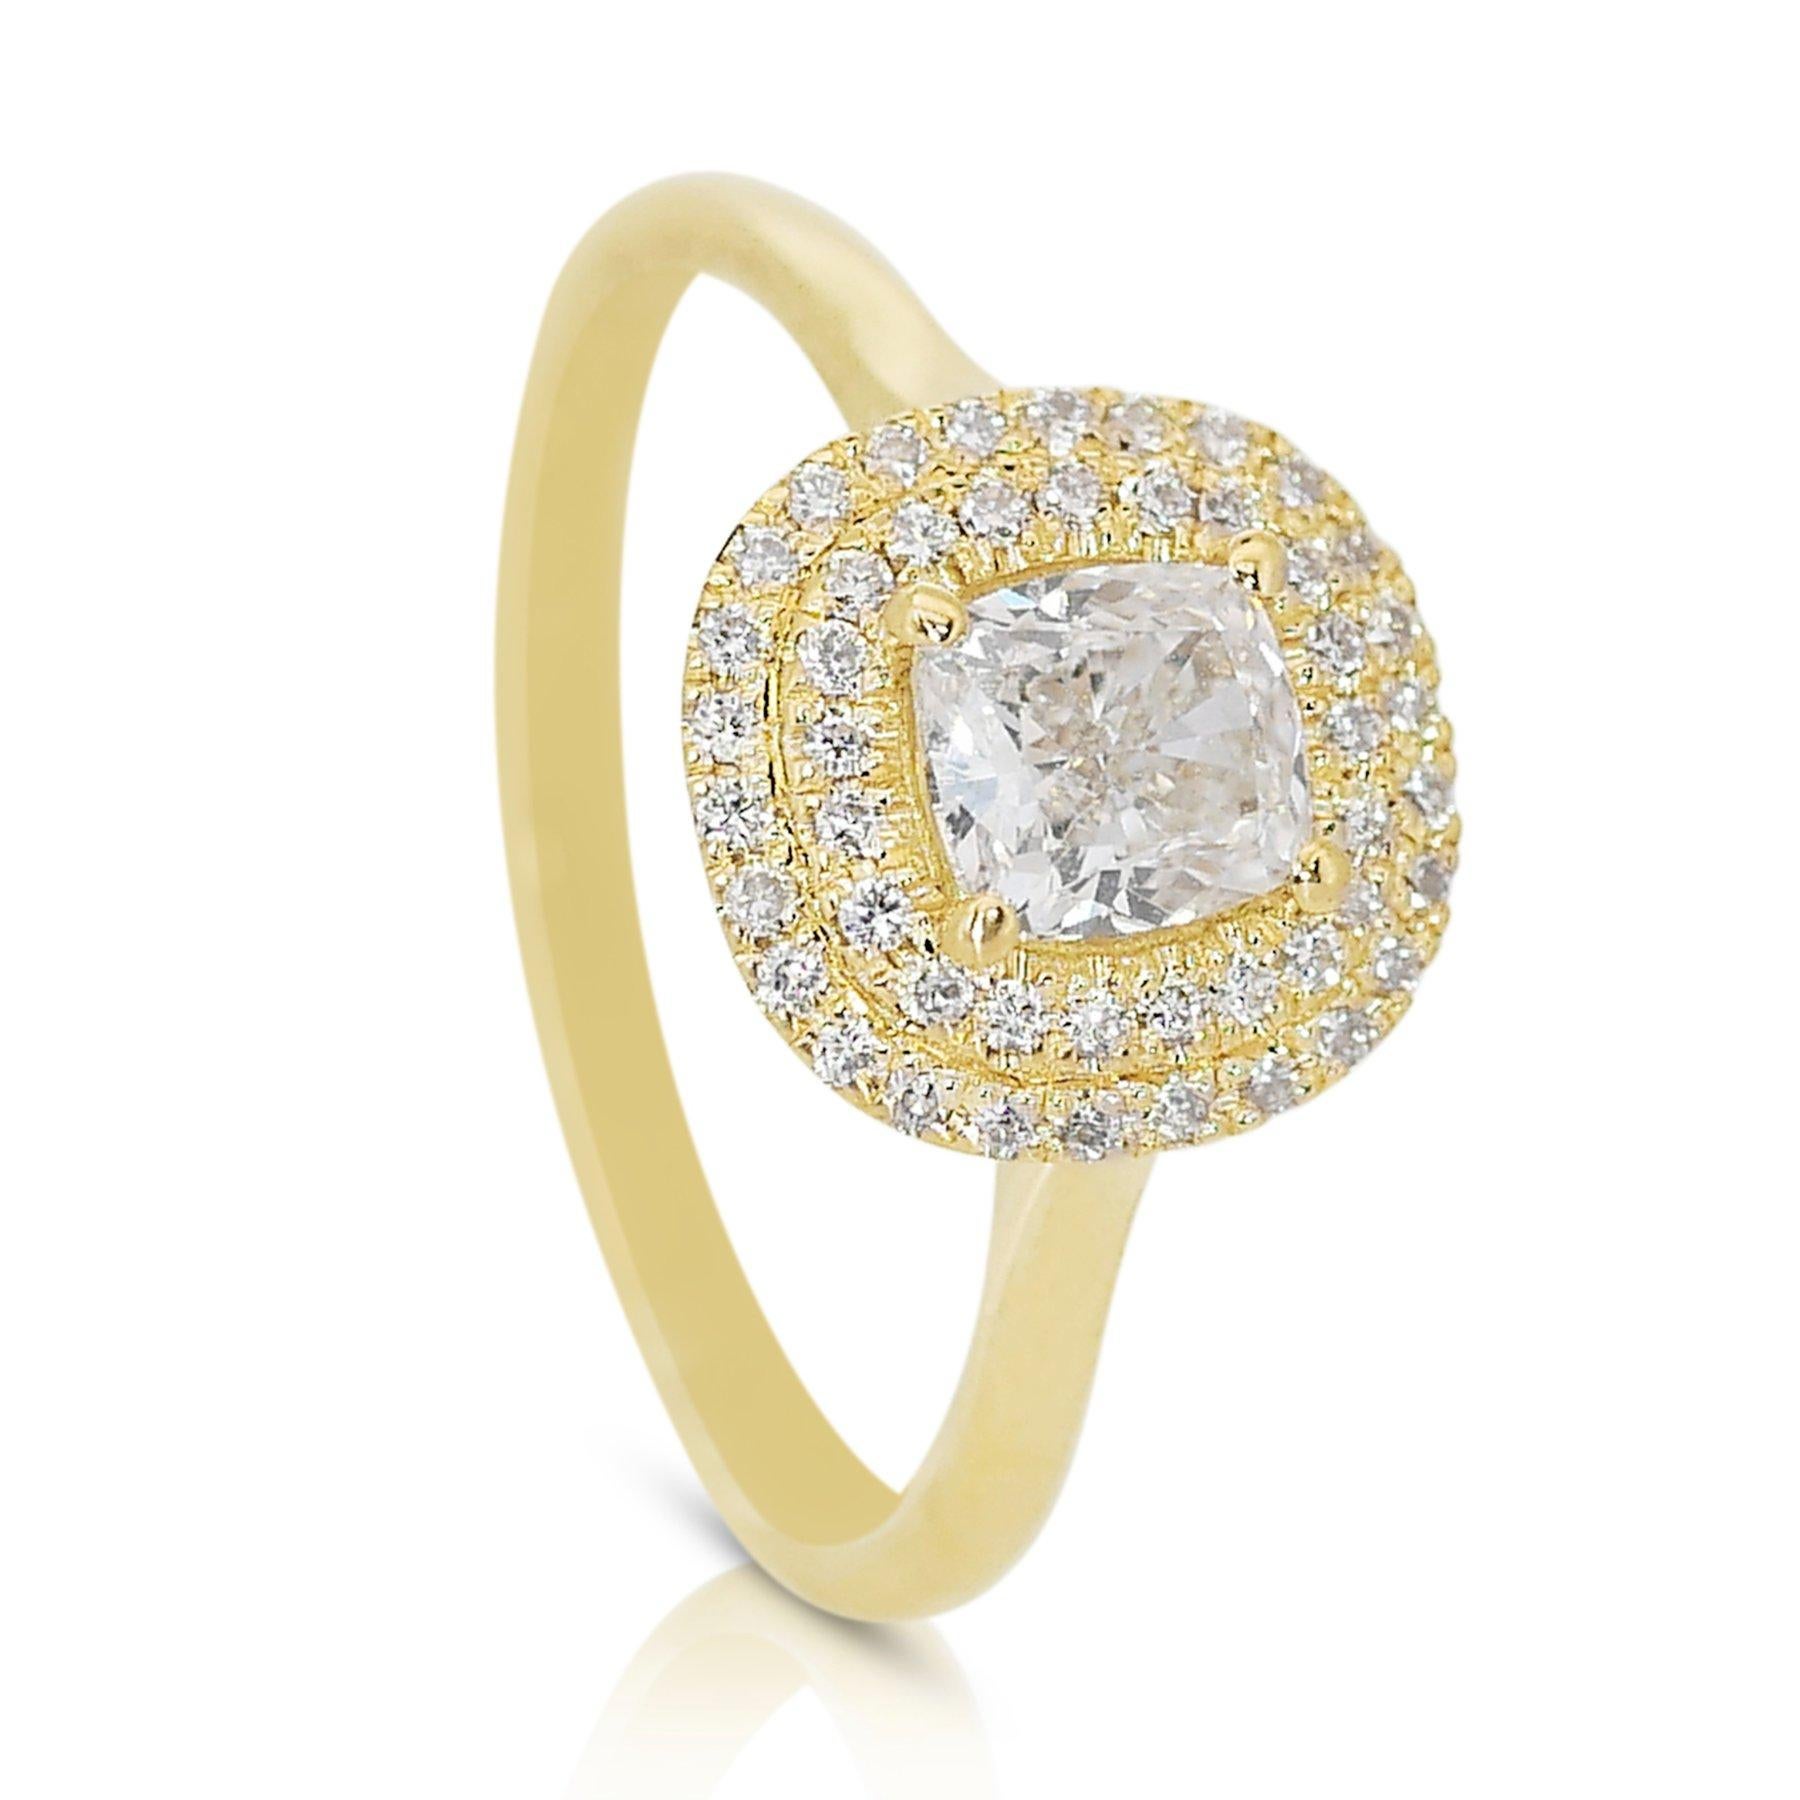 Prächtiger 1,22ct Diamond Double Halo Ring in 18k Gelbgold - GIA zertifiziert

Gönnen Sie sich zeitlose Eleganz mit diesem exquisiten Diamantring aus 18 Karat Gelbgold mit doppeltem Halo. Das Herzstück ist ein kissenförmiger Diamant von 1,00 Karat.